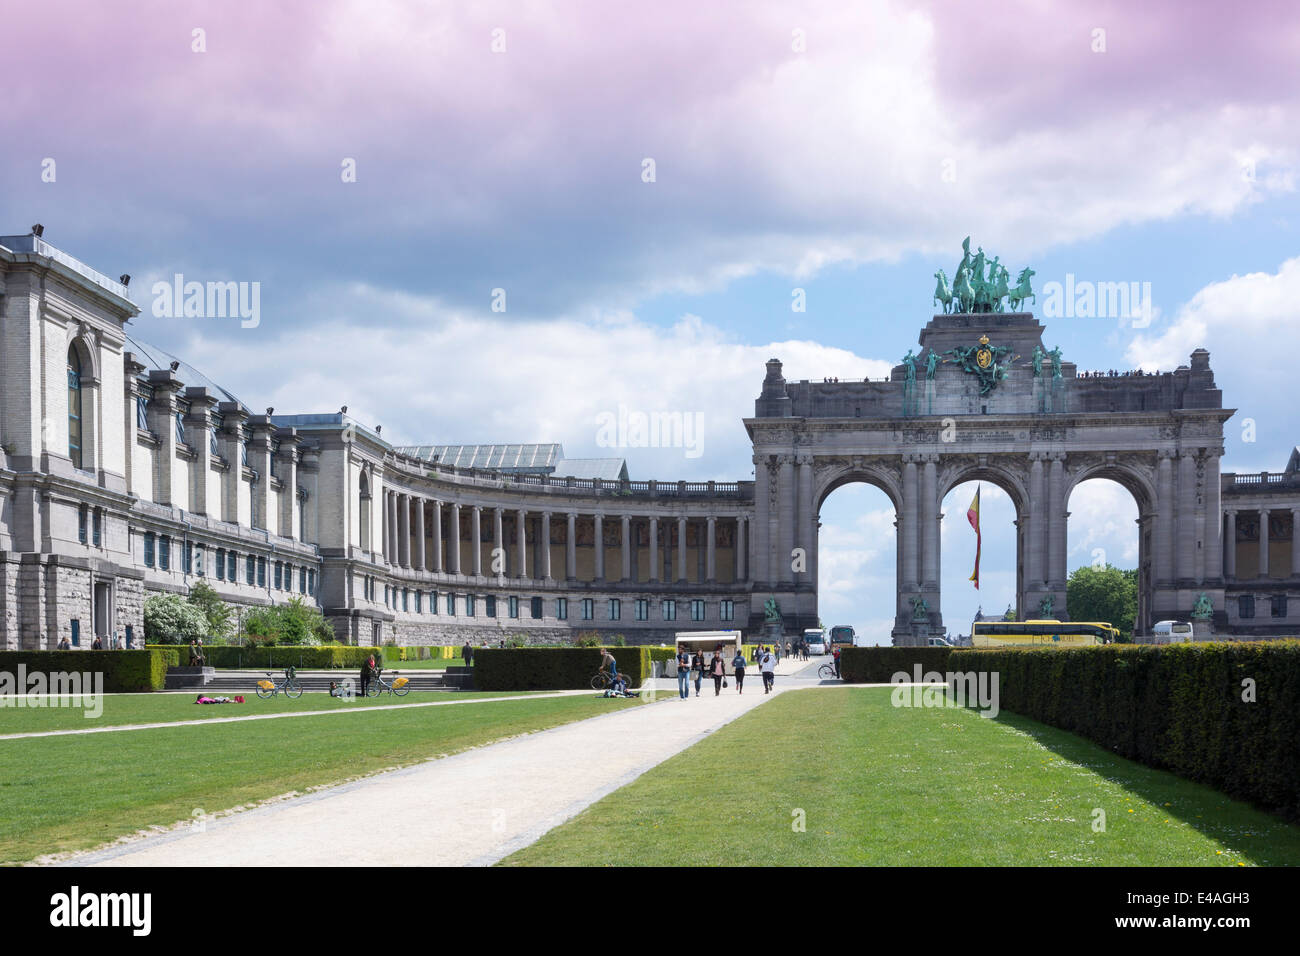 Belgium, Brussels, Parc du Cinquantenaire, Triumphal Arch Stock Photo